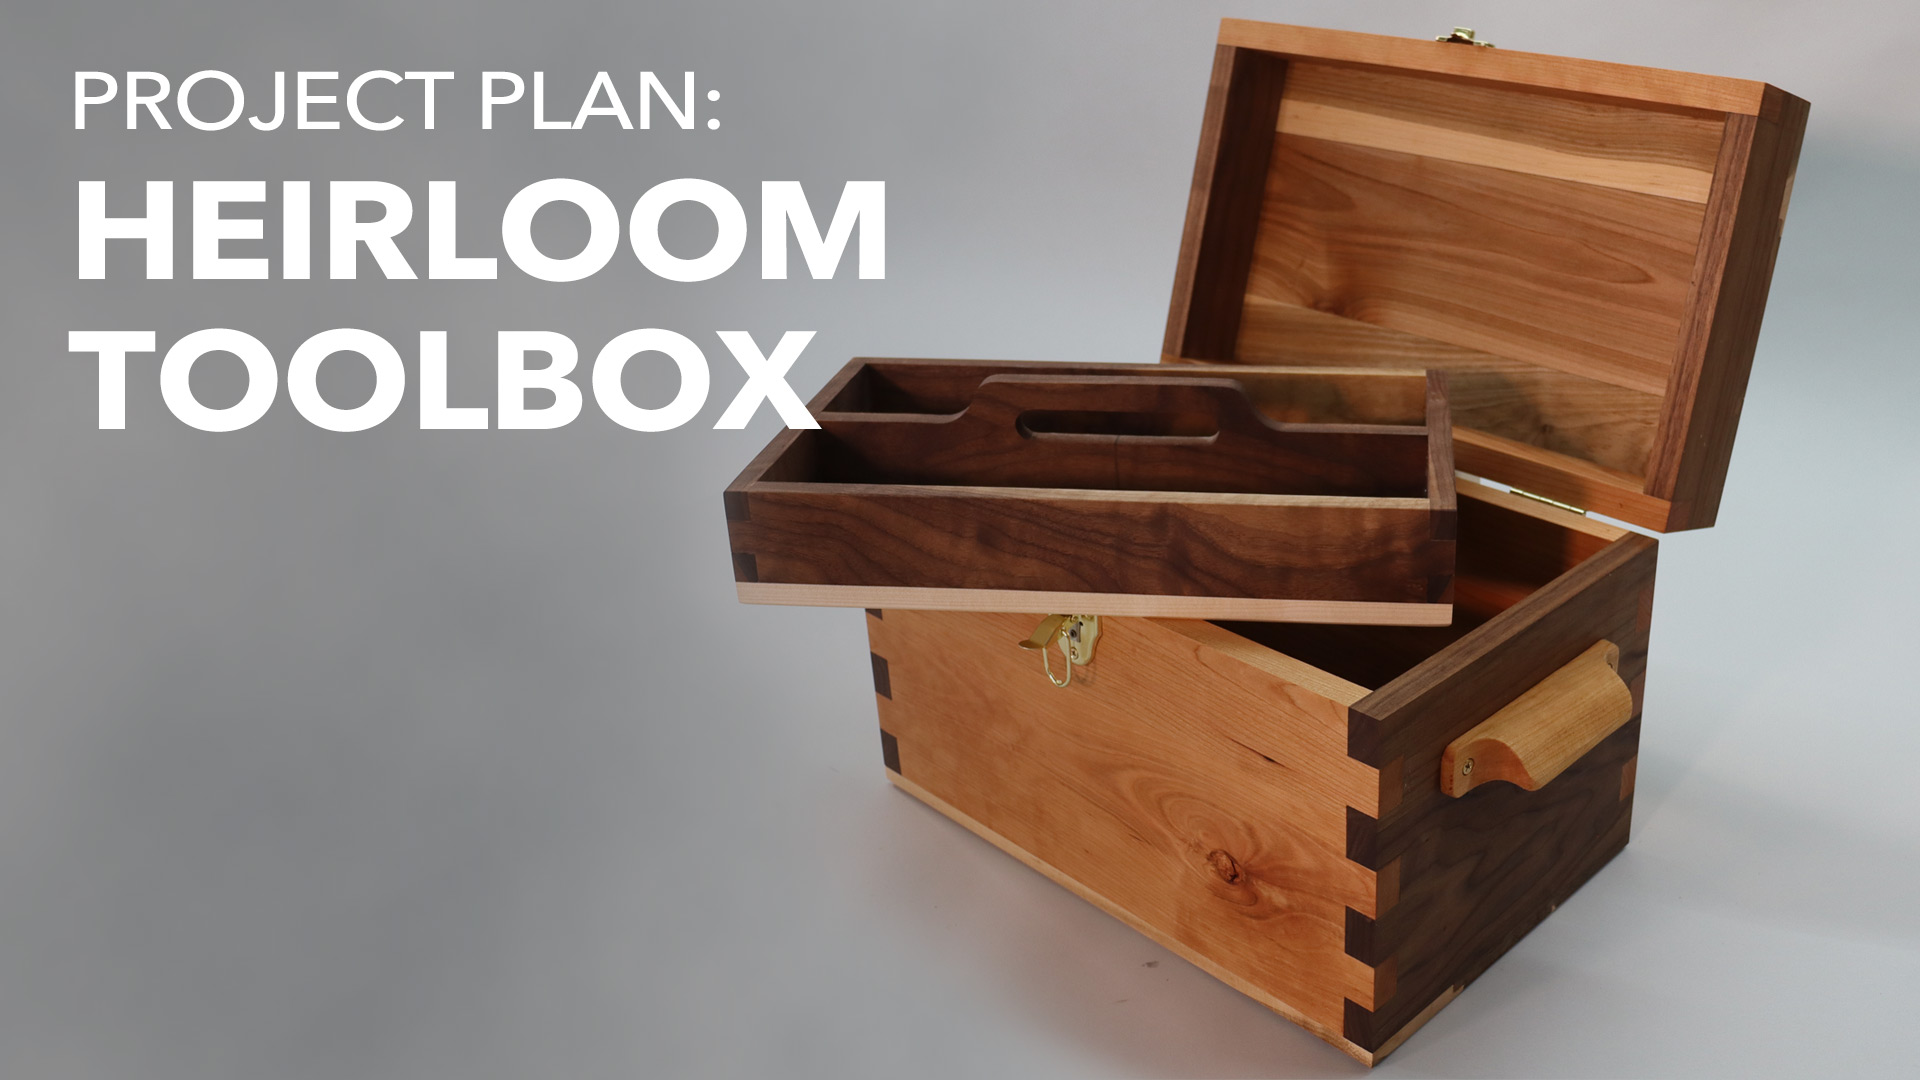 Heirloom toolbox